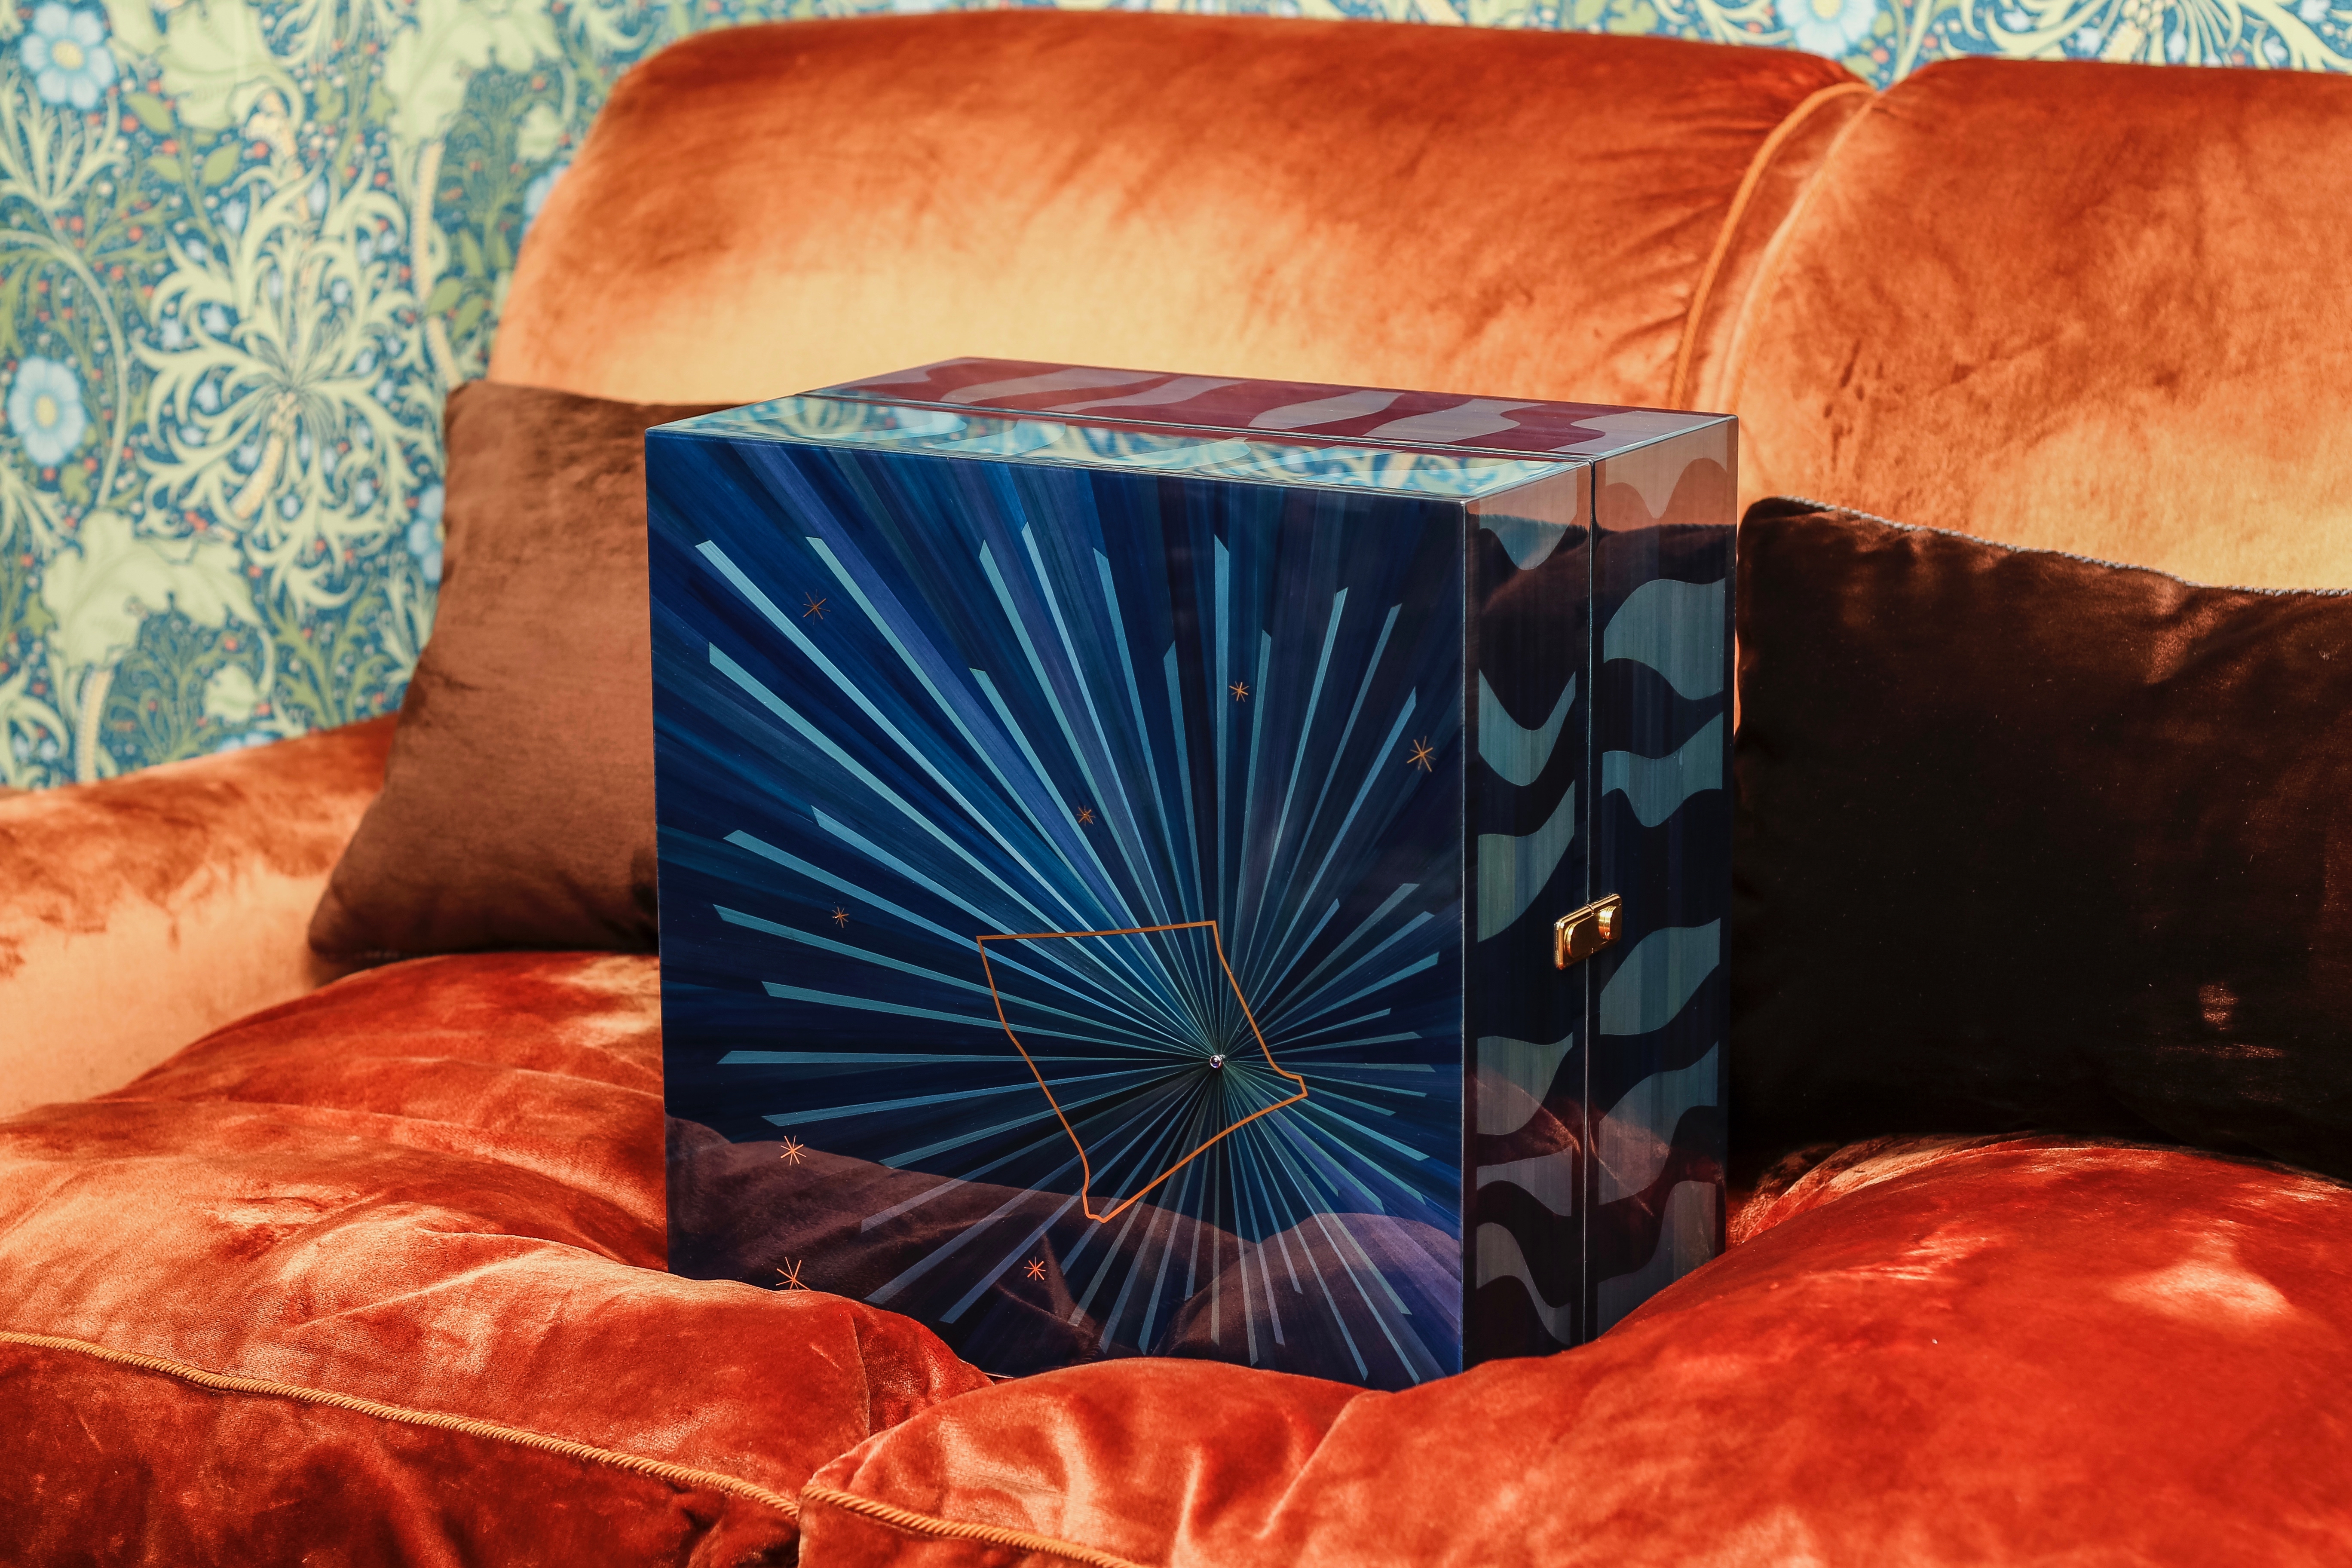 Faberge box designed by Gemma Martinez de Ana